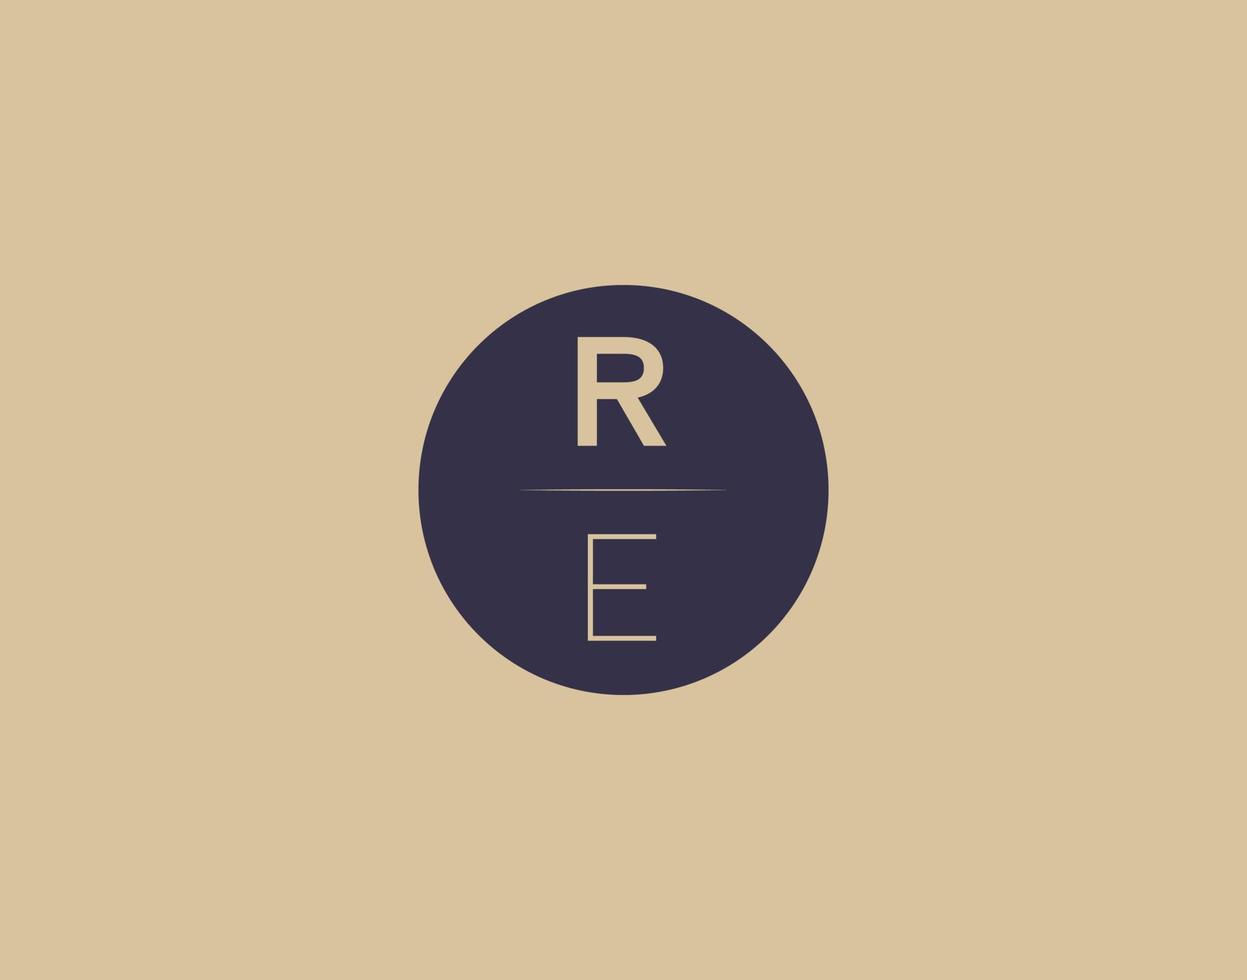 RE letter modern elegant logo design vector images